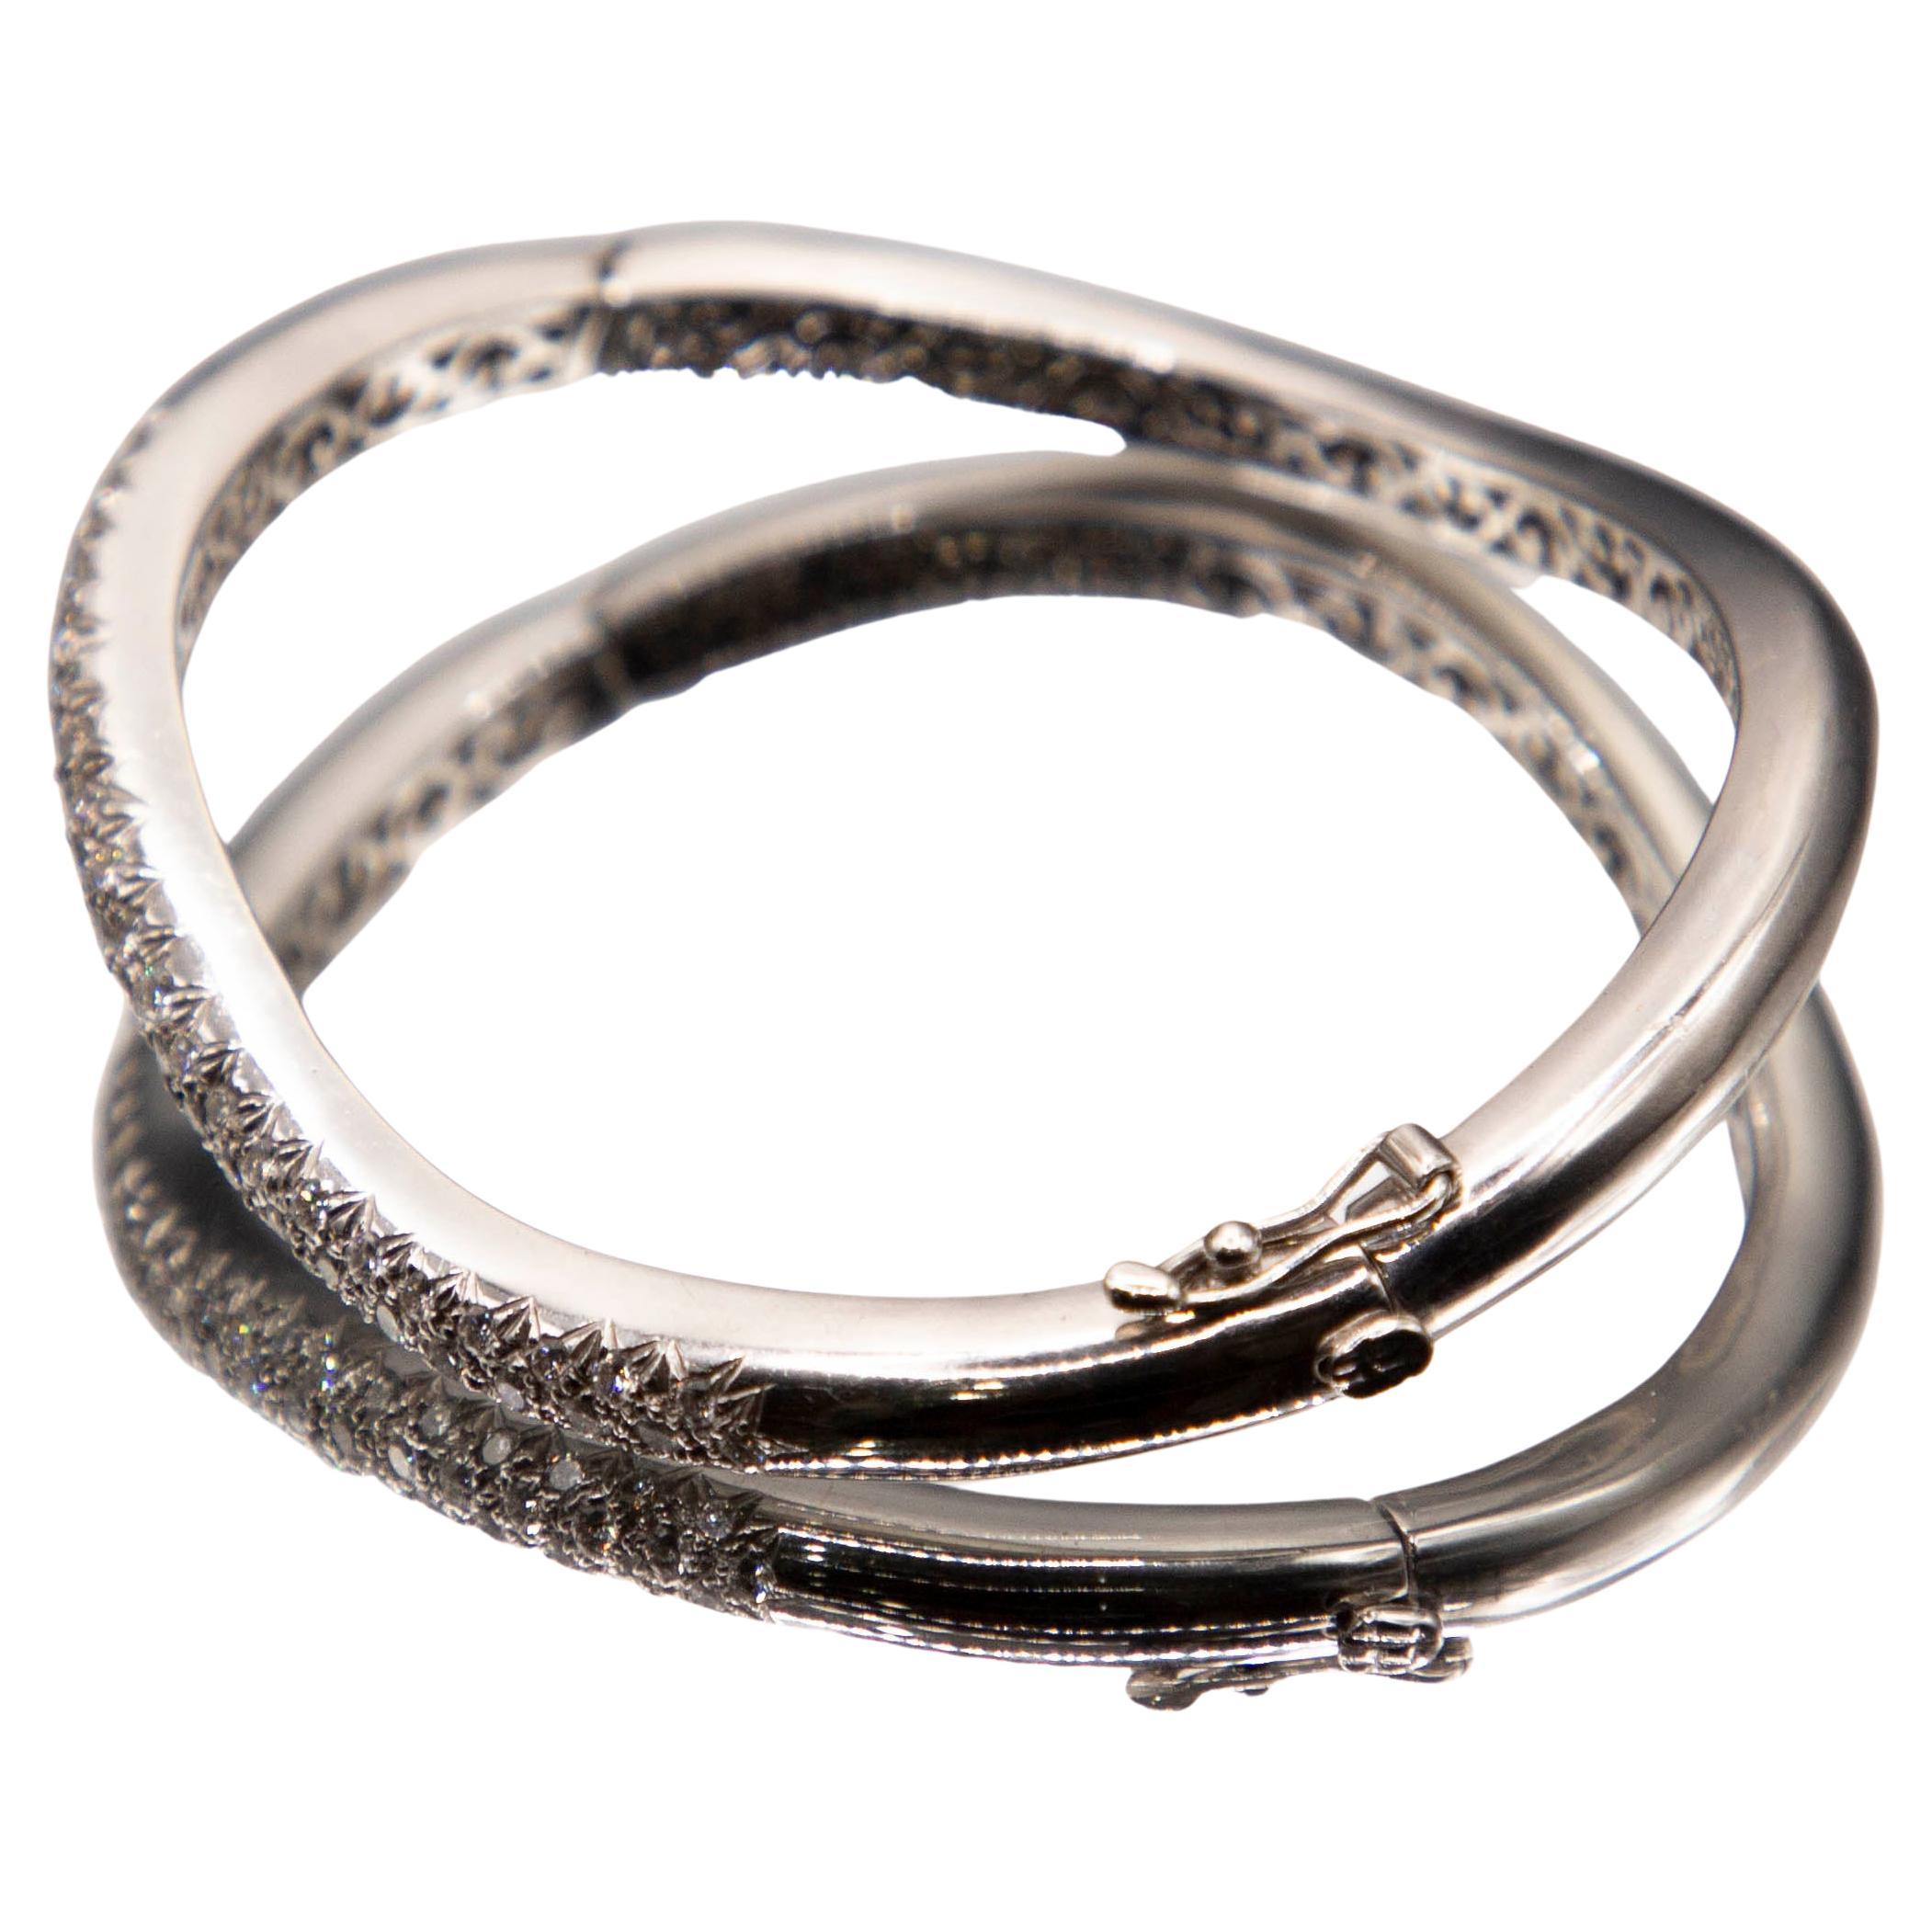 1.28 Carats of Fine Diamonds Pave'- Set in 18k White Gold Cuff Bracelet